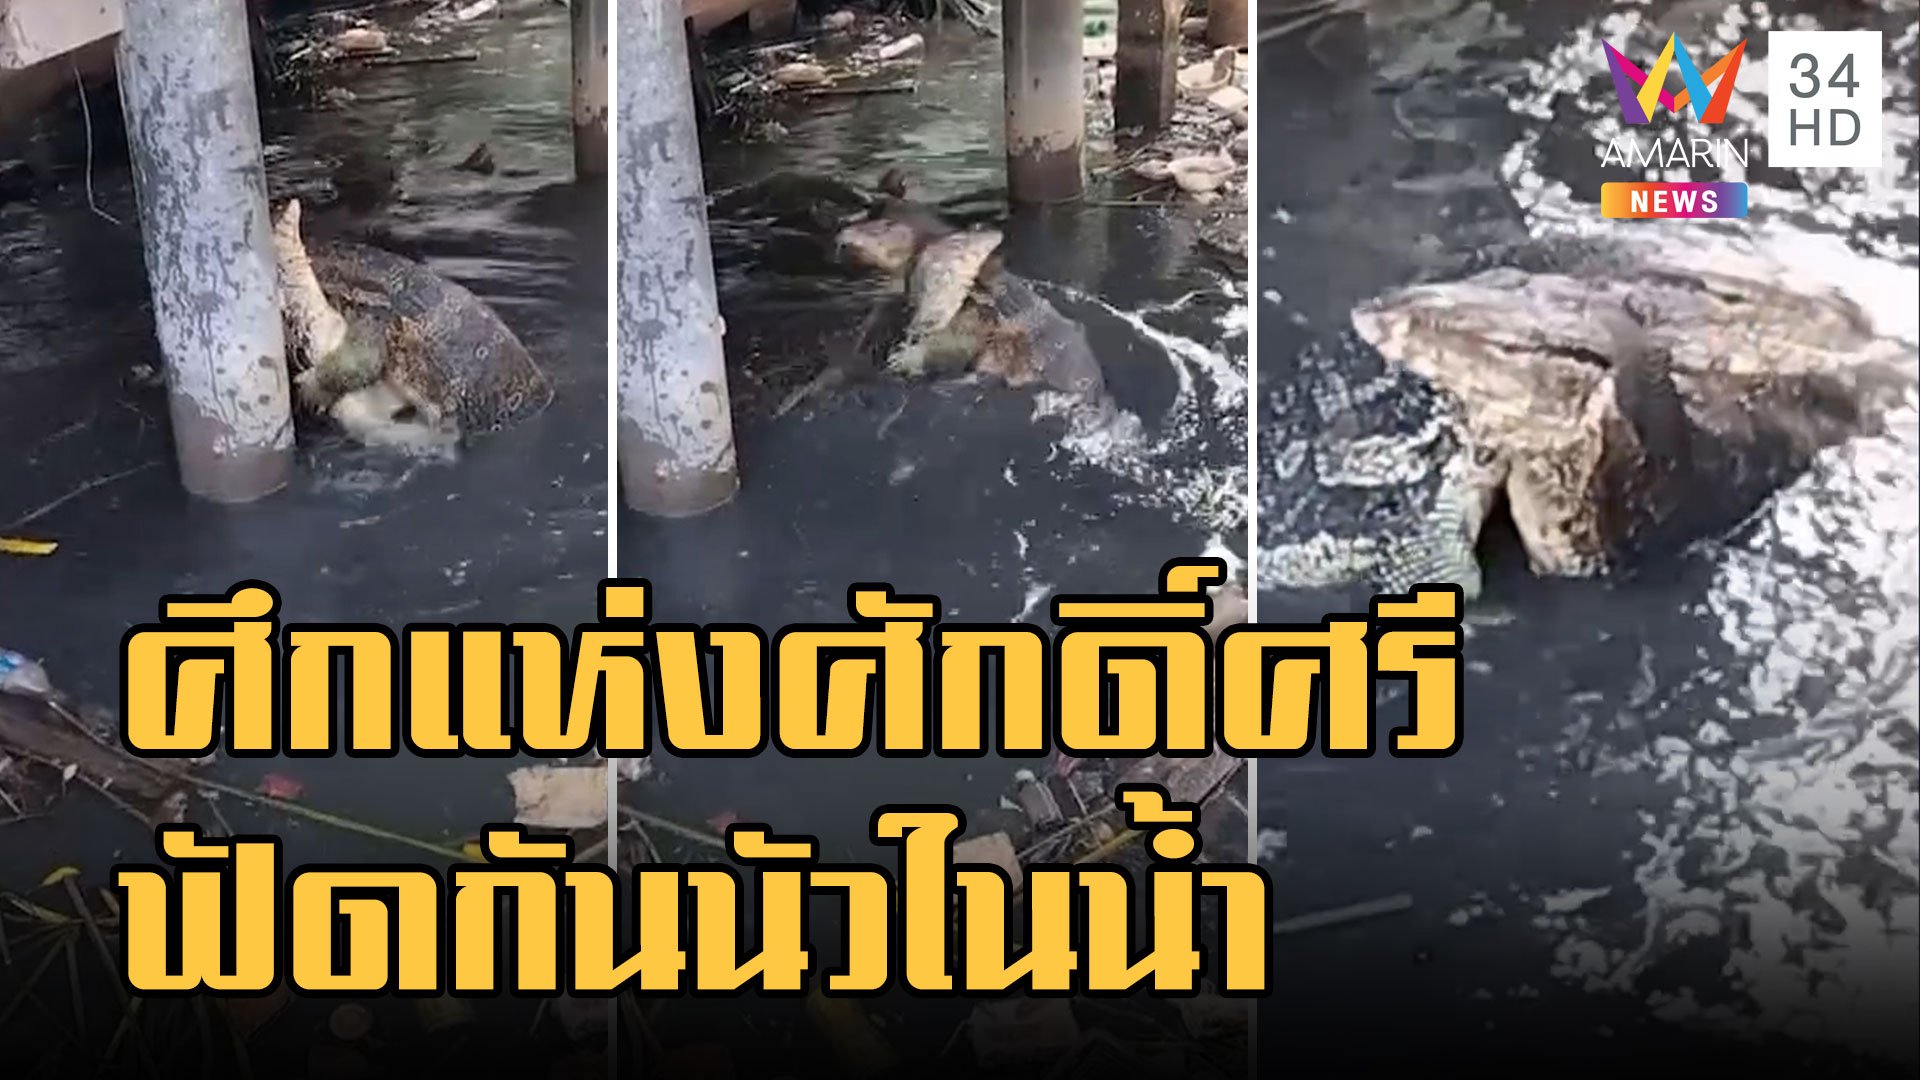 ศึกแห่งศักดิ์ศรี เหี้ยชิงหัวปลาดุก ฟัดกันนัวในน้ำ | ข่าวอรุณอมรินทร์ | 29 ต.ค. 65 | AMARIN TVHD34